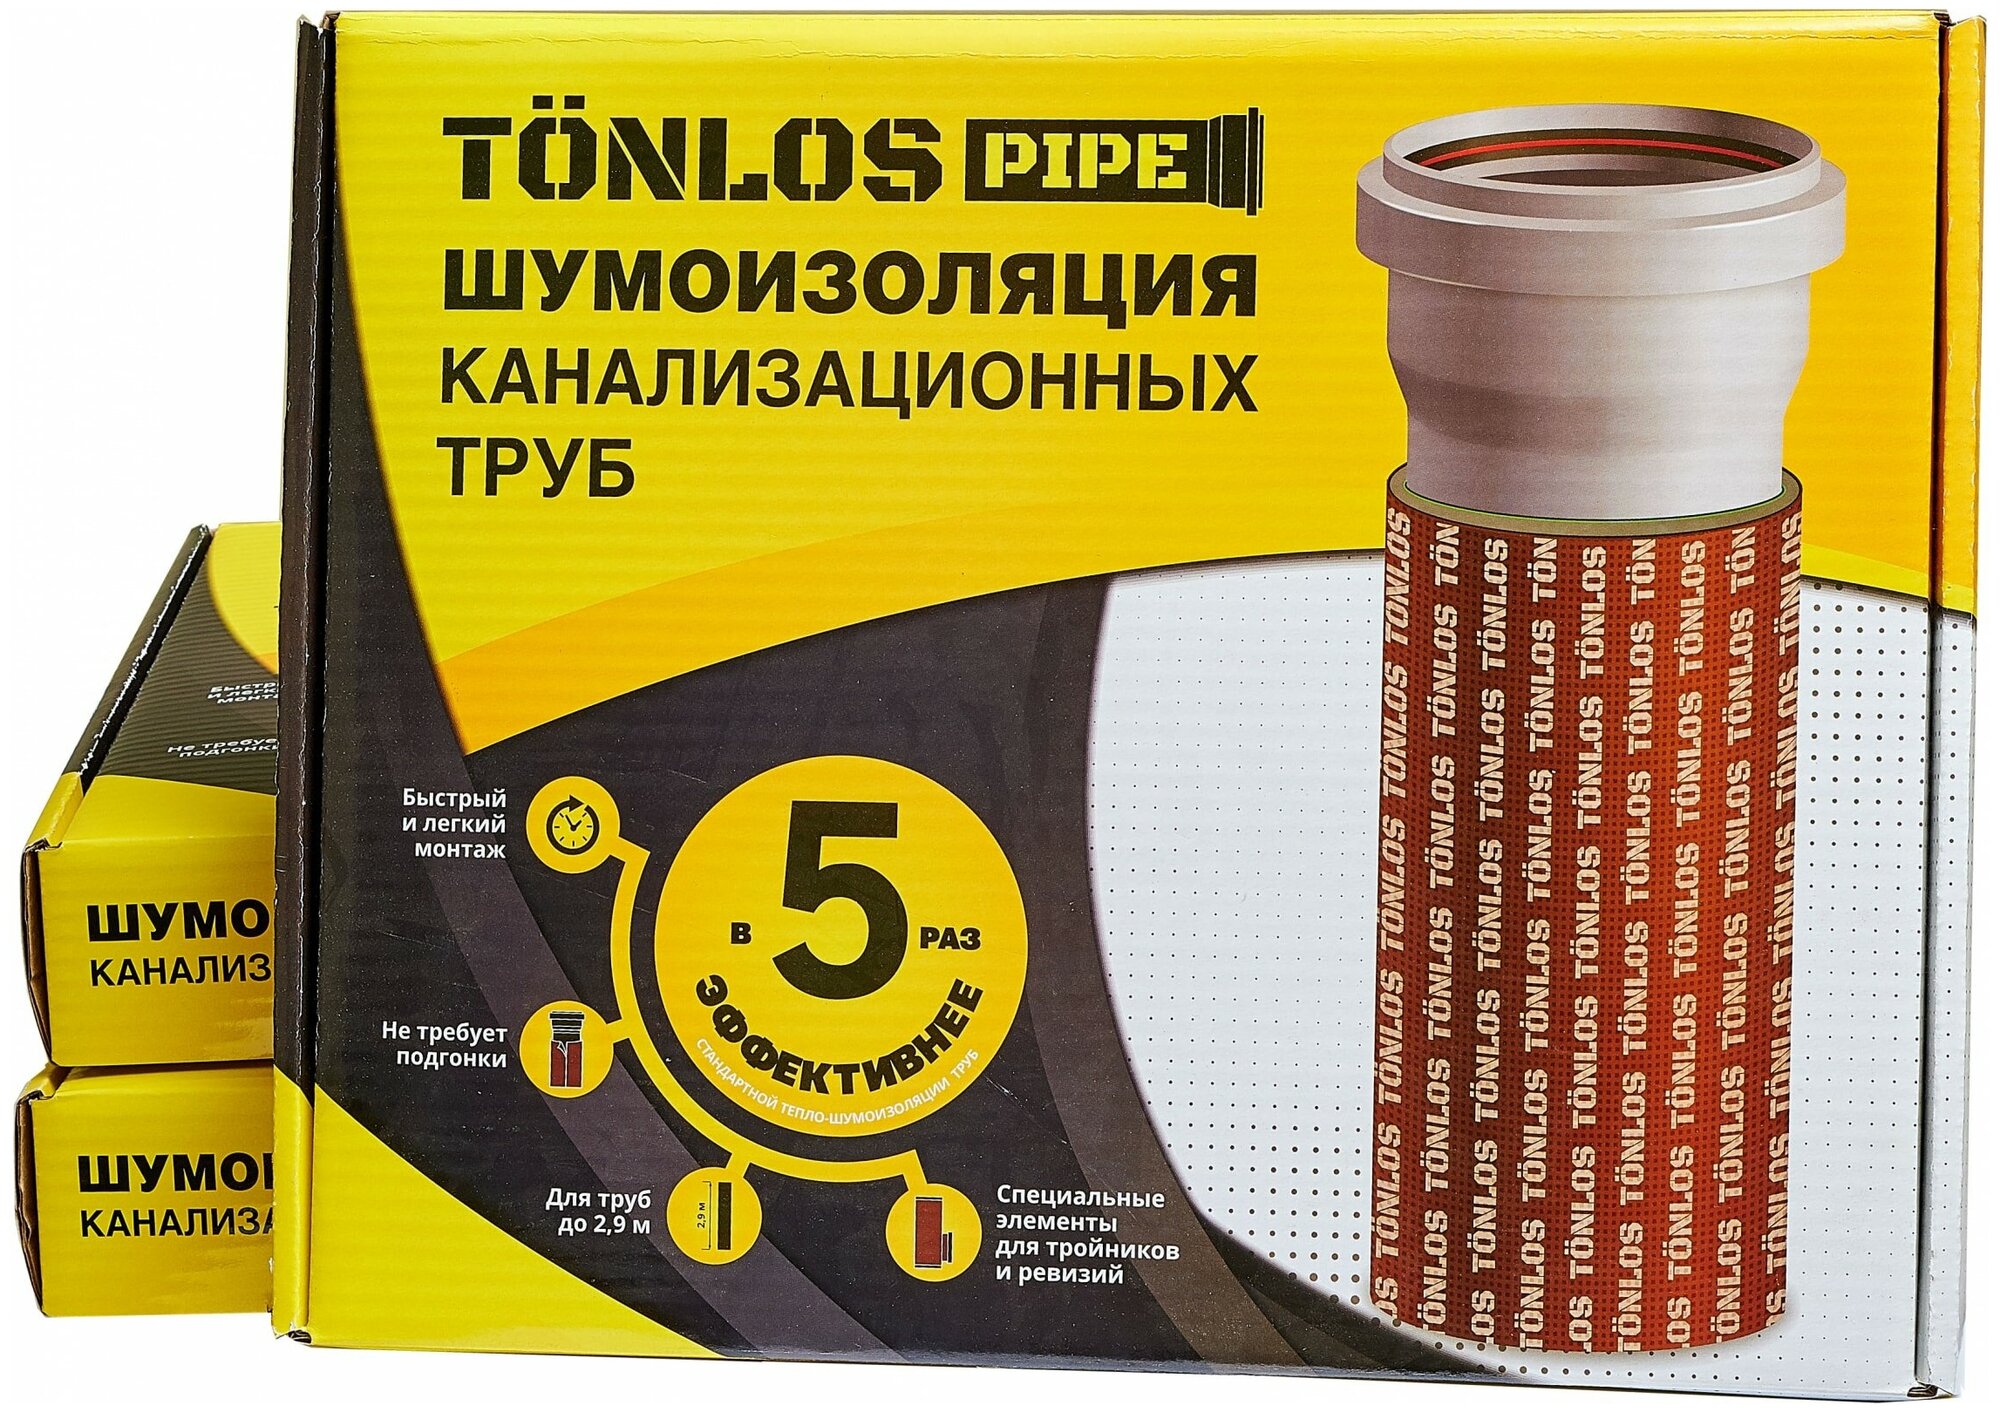 Комплект для шумоизоляции канализационных труб Tonlos Pipe БМ00000304779